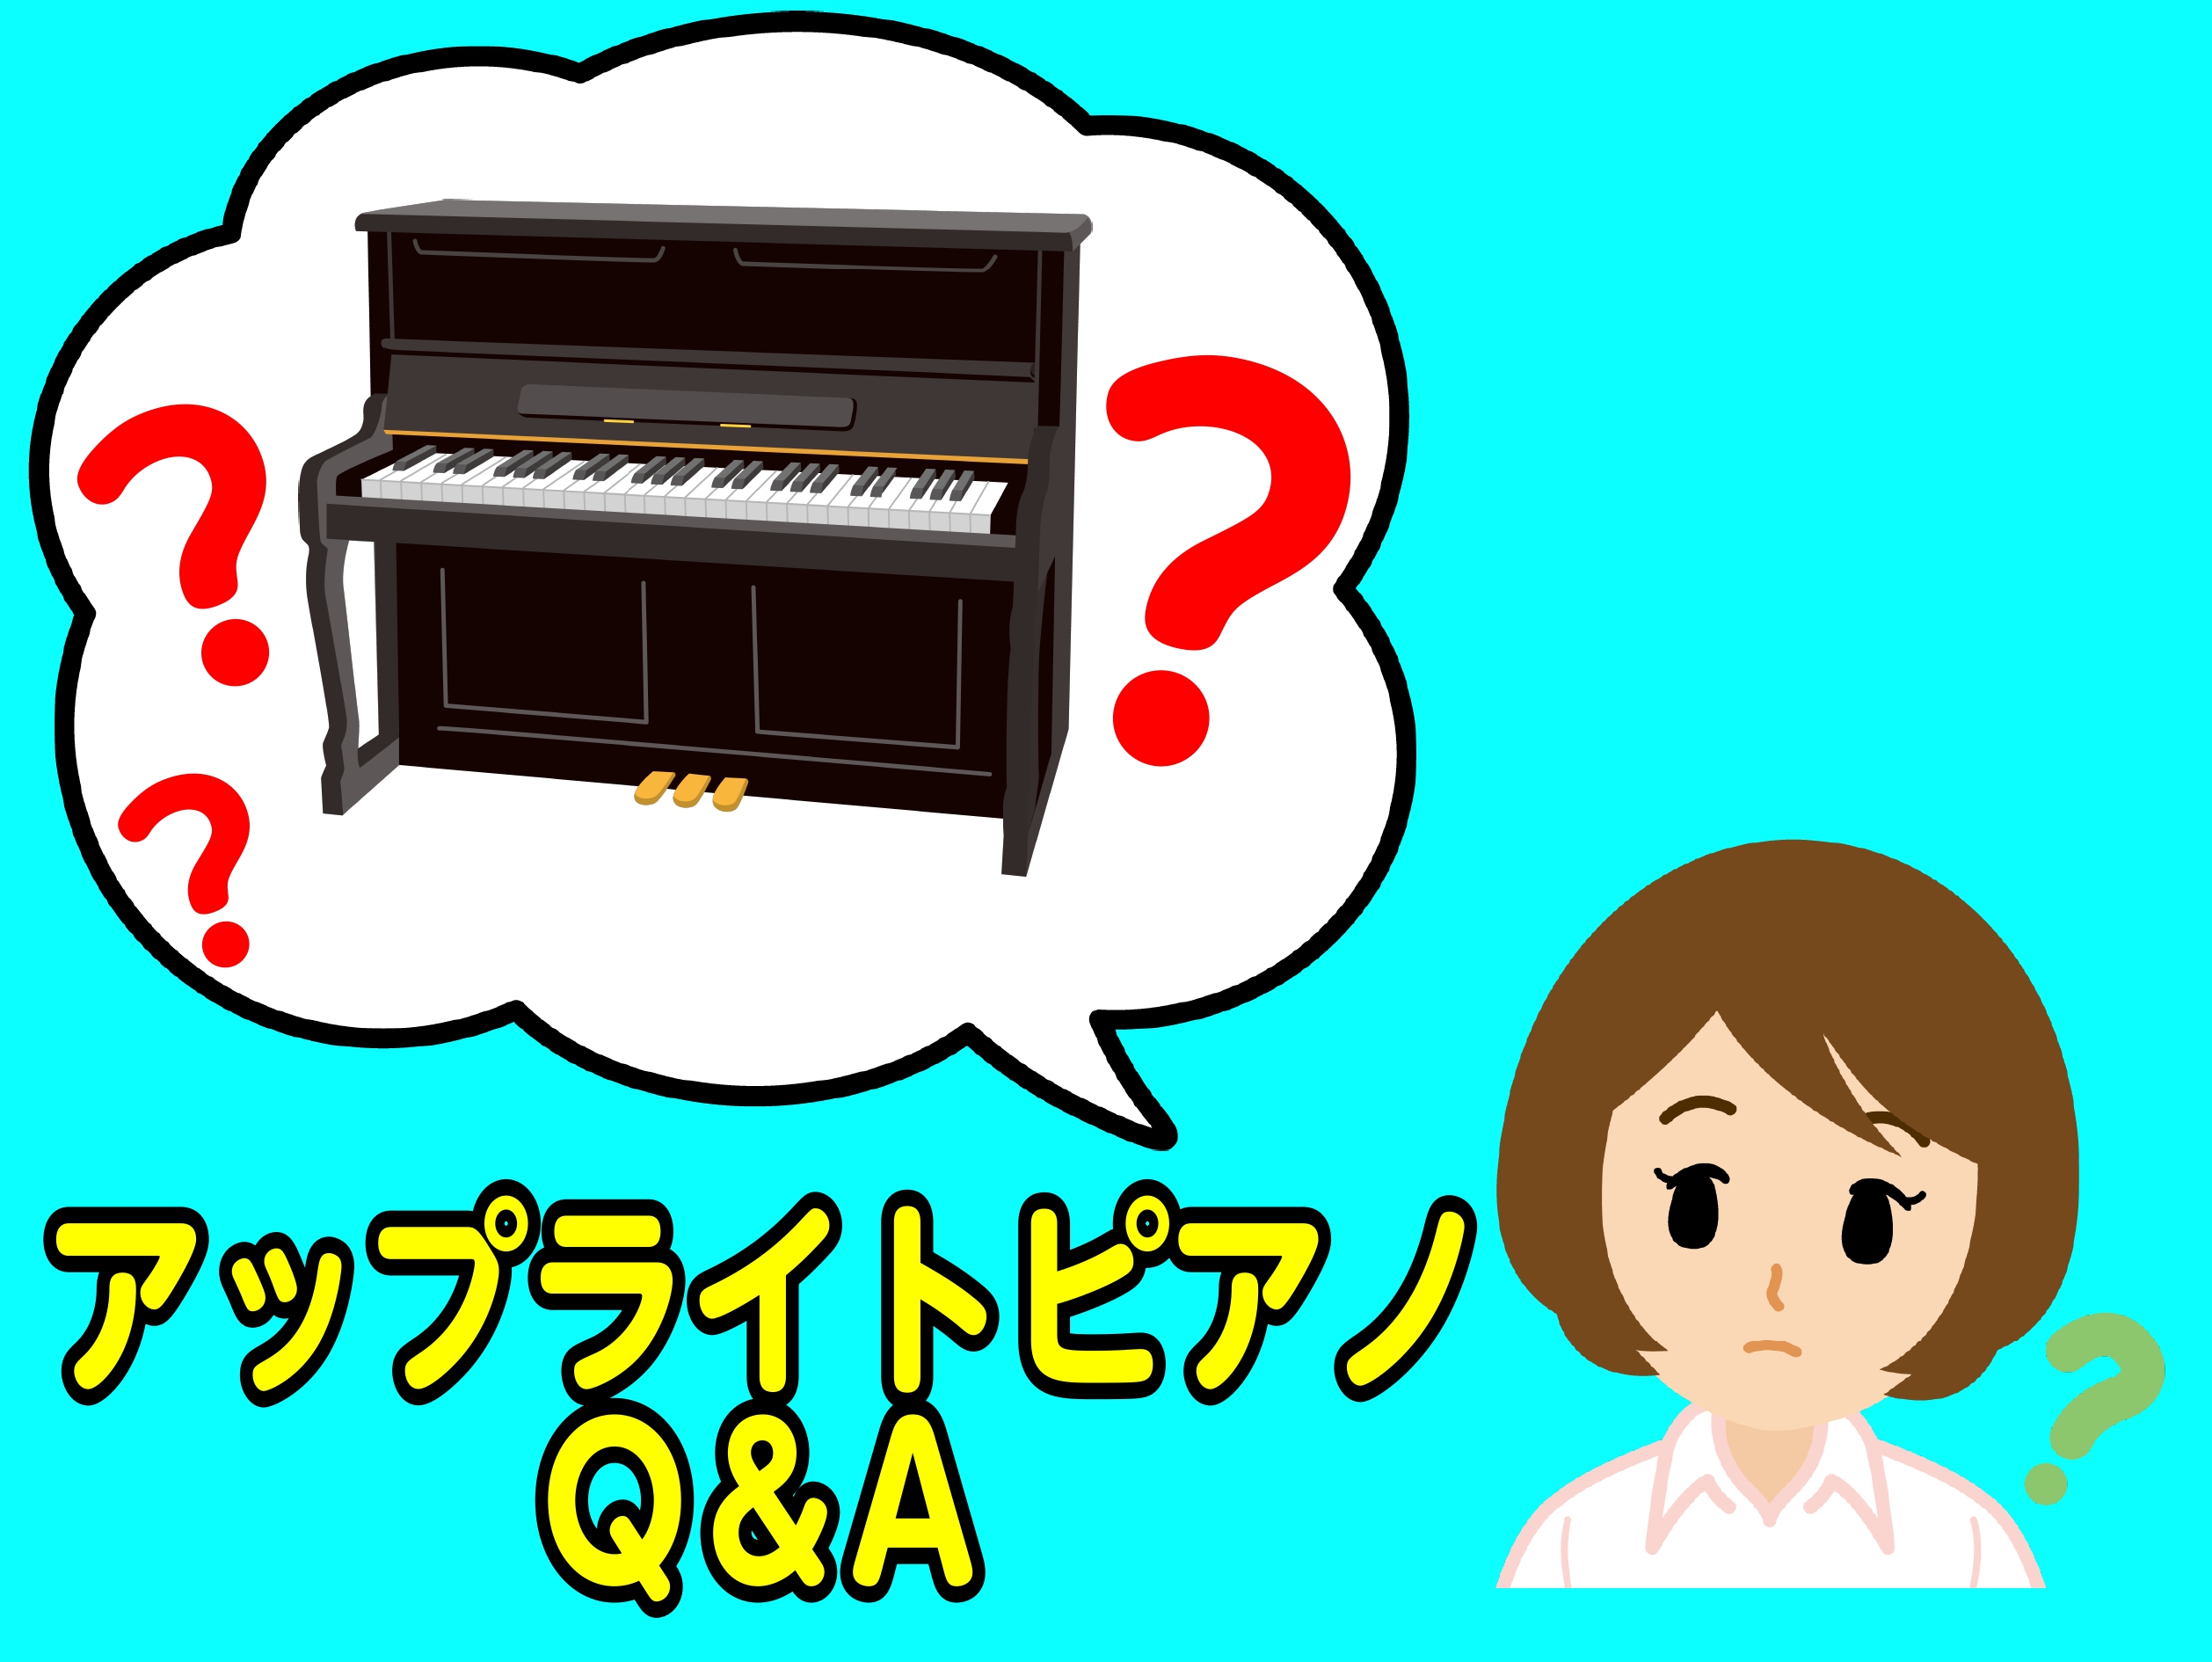 Q:ピアノを置く部屋はどんな環境がベストですか？ A：ピアノにとって最適なお部屋の環境は、温度は15℃～25℃、湿度は40％～60％が最適です★ 急激な温度変化、適度な湿度、過乾燥はアクション(鍵盤)や音律に影響を及ぼします。 日本(特に沖縄)のジメジメした夏や感想が激し冬は除湿機や加湿器などで管理 […]